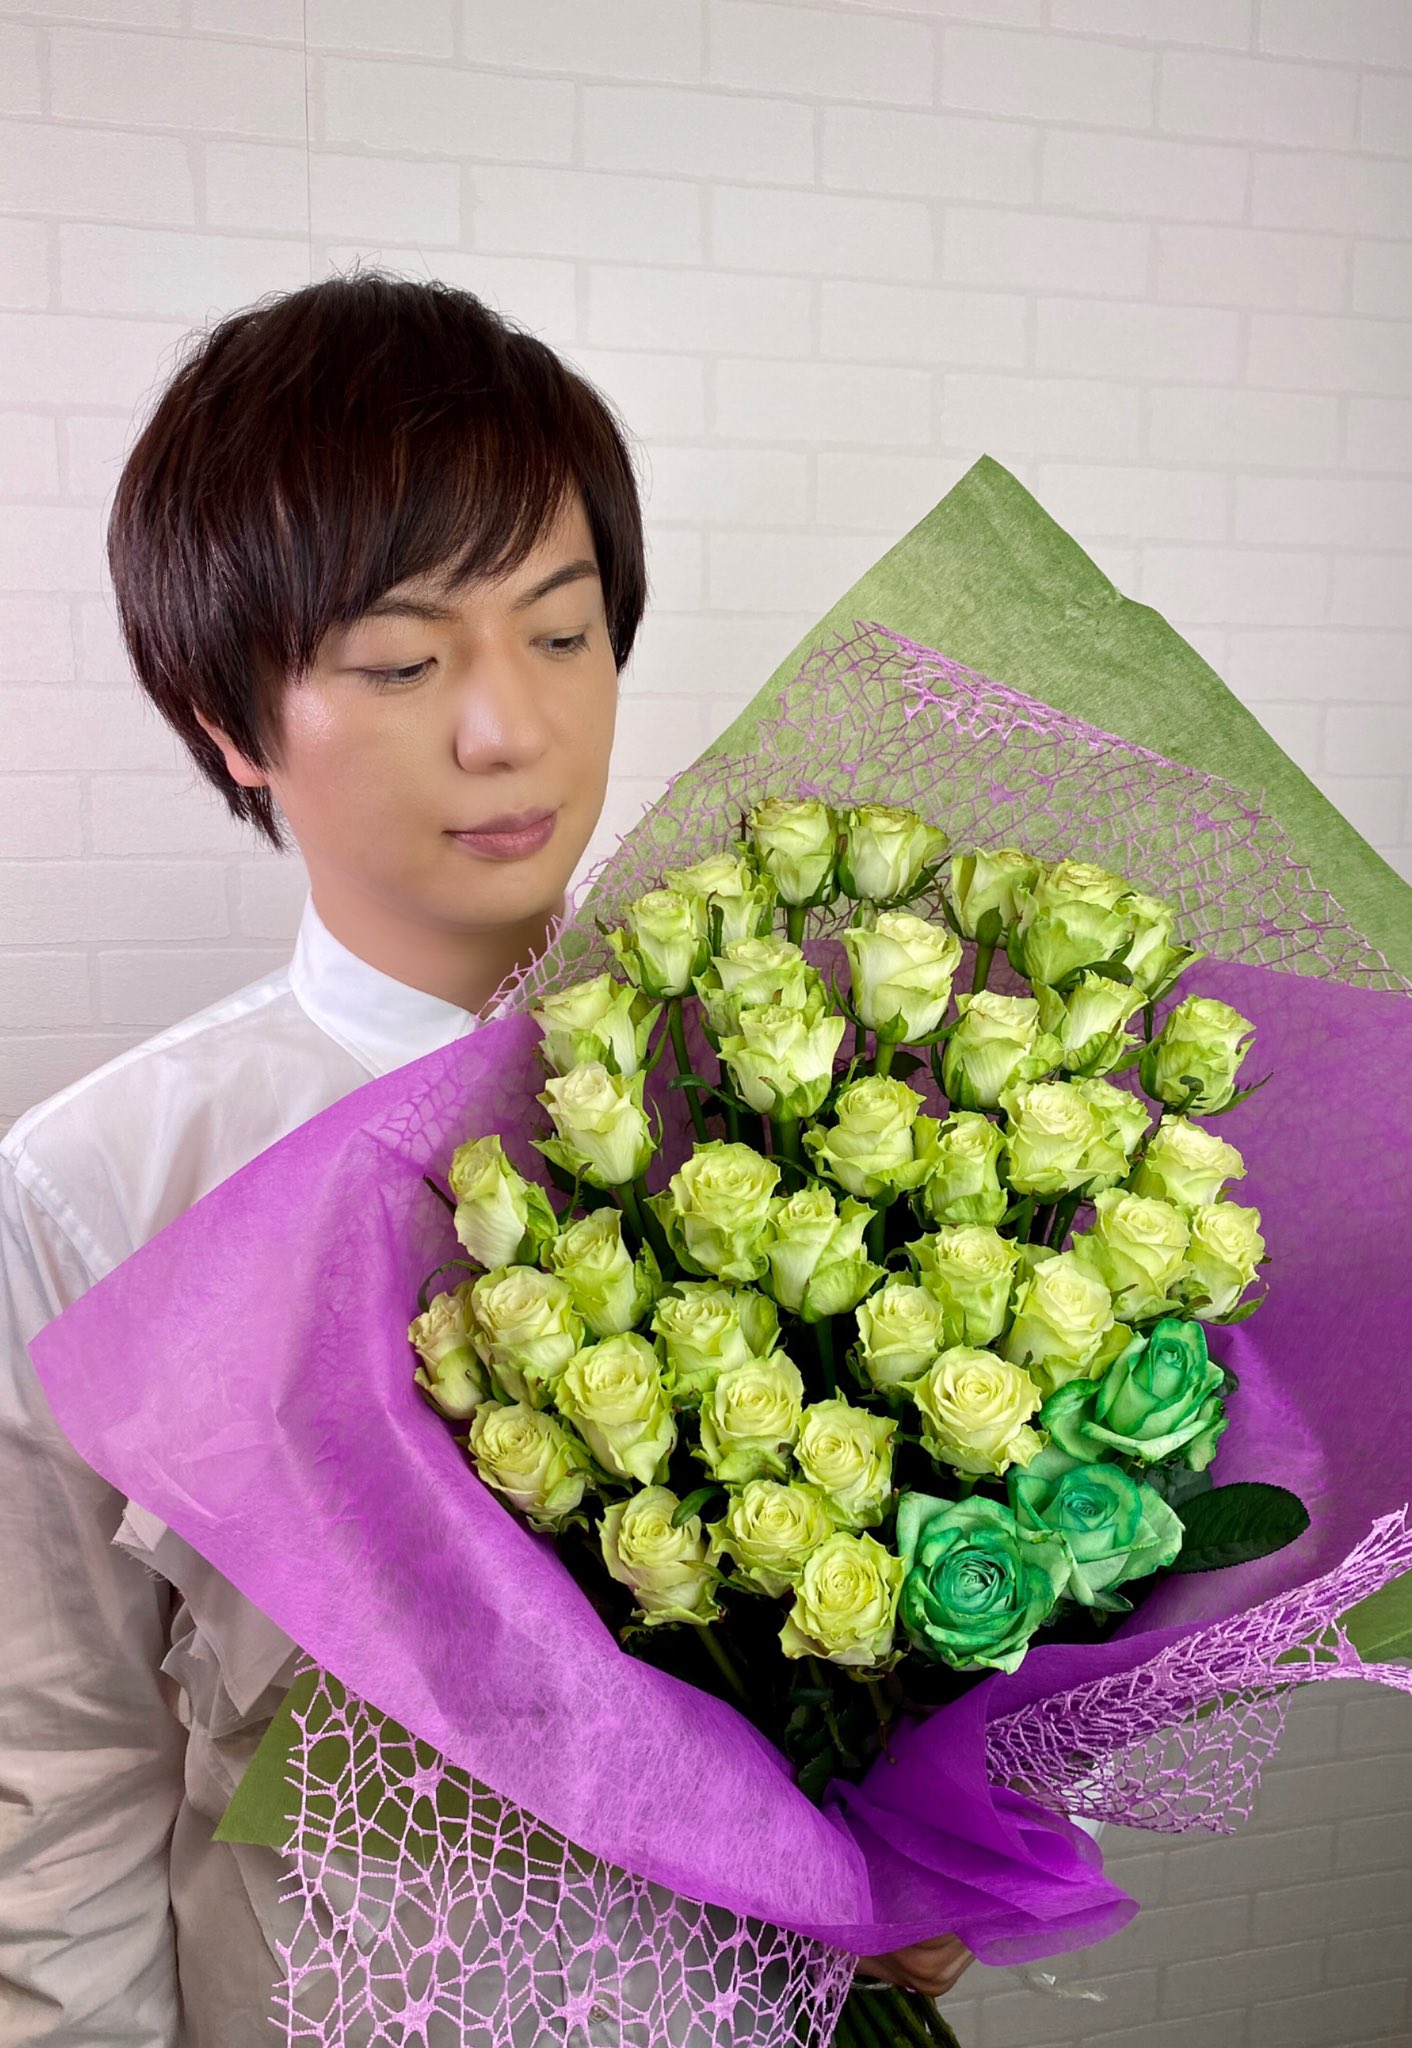 竹島宏スタッフ 公式 A Twitter 薔薇 緑 薔薇緑色の花言葉は あなたは希望を持ちえる めずらしい緑色の薔薇 グリーンローズ という韓国の大ヒットドラマがあるそうですよ 見てみたいです 今日も１日お疲れ様でした ひろネット 花言葉 花便り